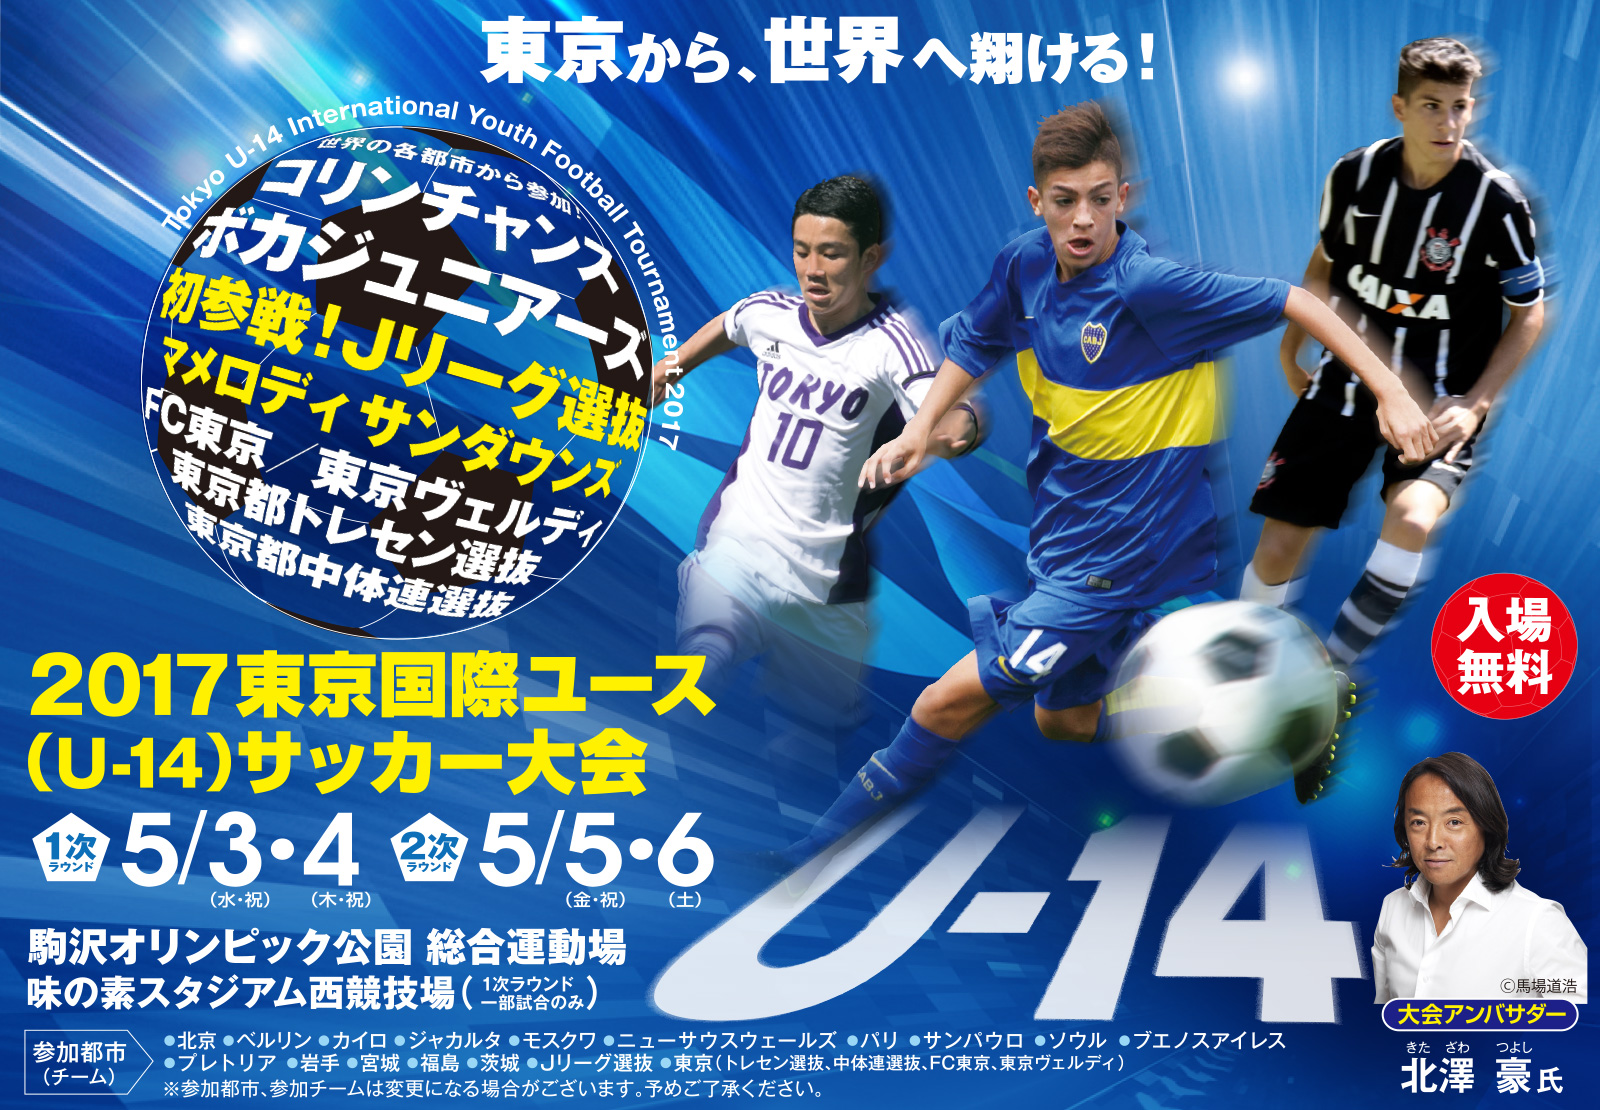 東京から 世界へ翔ける 17東京国際ユース U 14 サッカー大会が5月開幕 サッカーキング